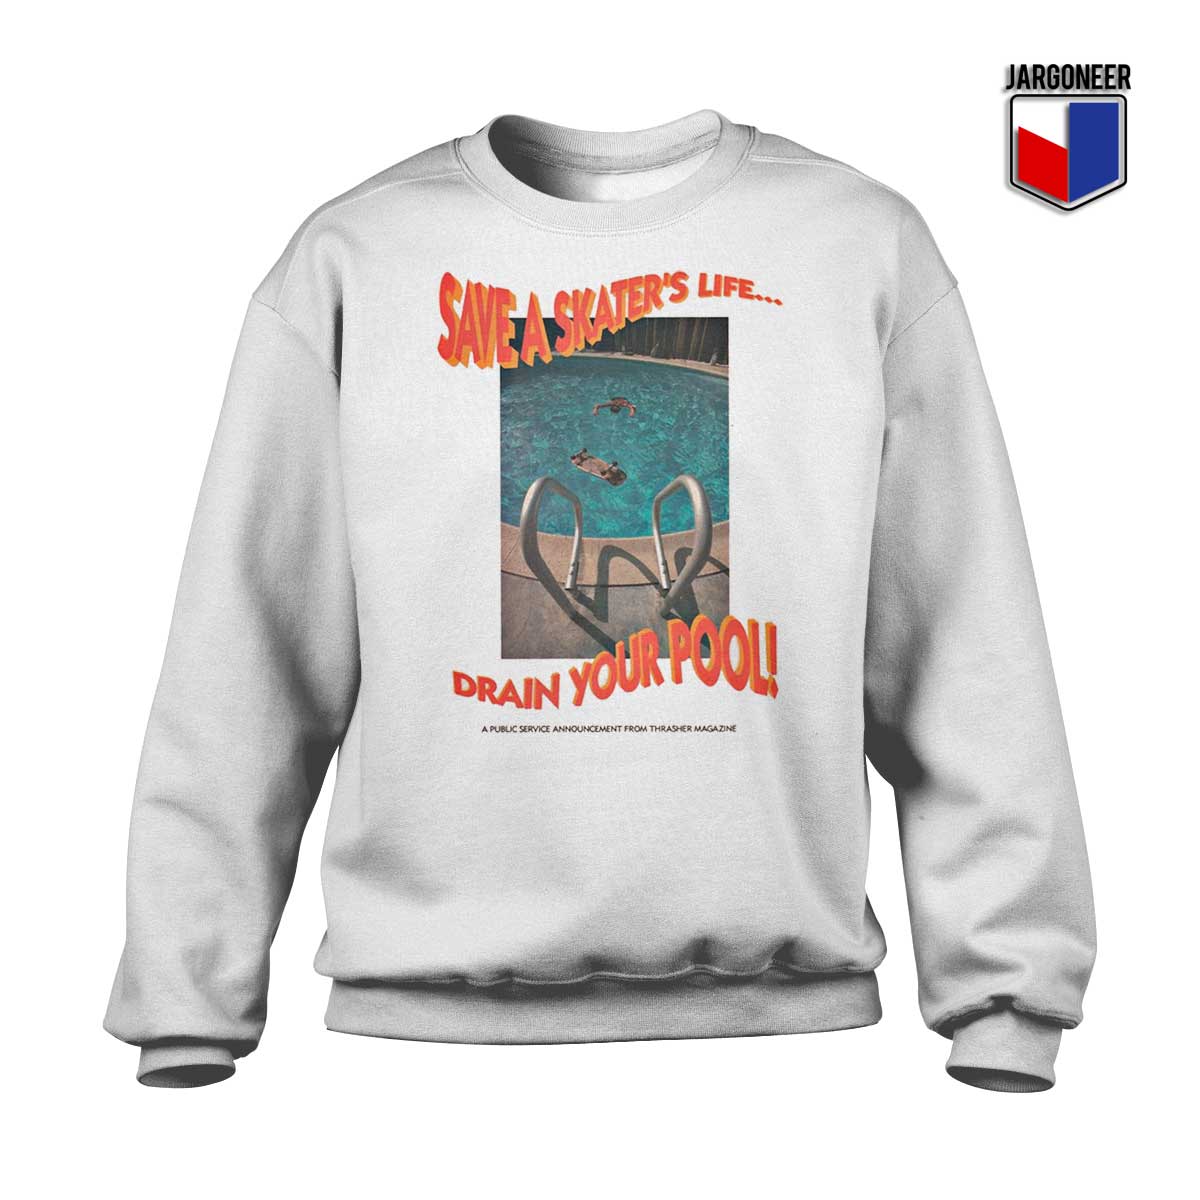 Save A Skaters Life Sweatshirt - Shop Unique Graphic Cool Shirt Designs